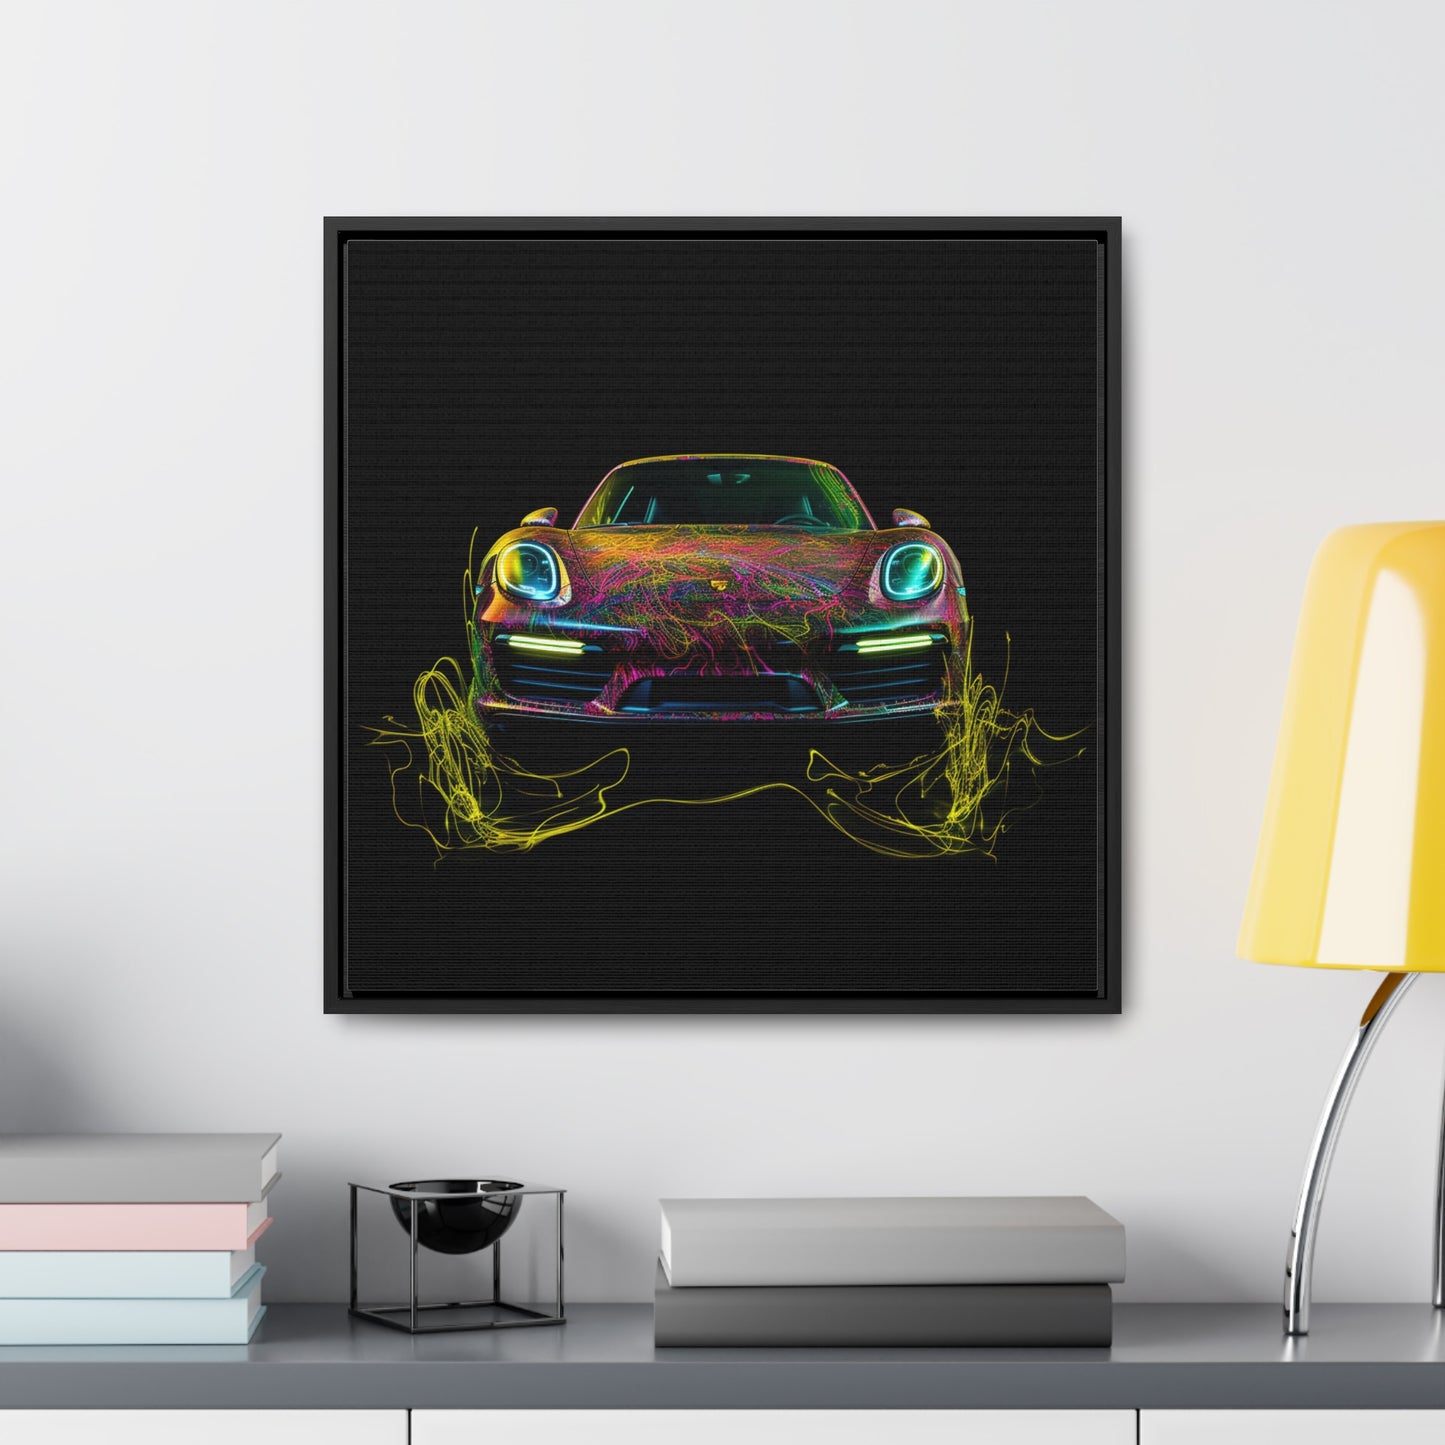 Gallery Canvas Wraps, Square Frame Porsche Flair 2